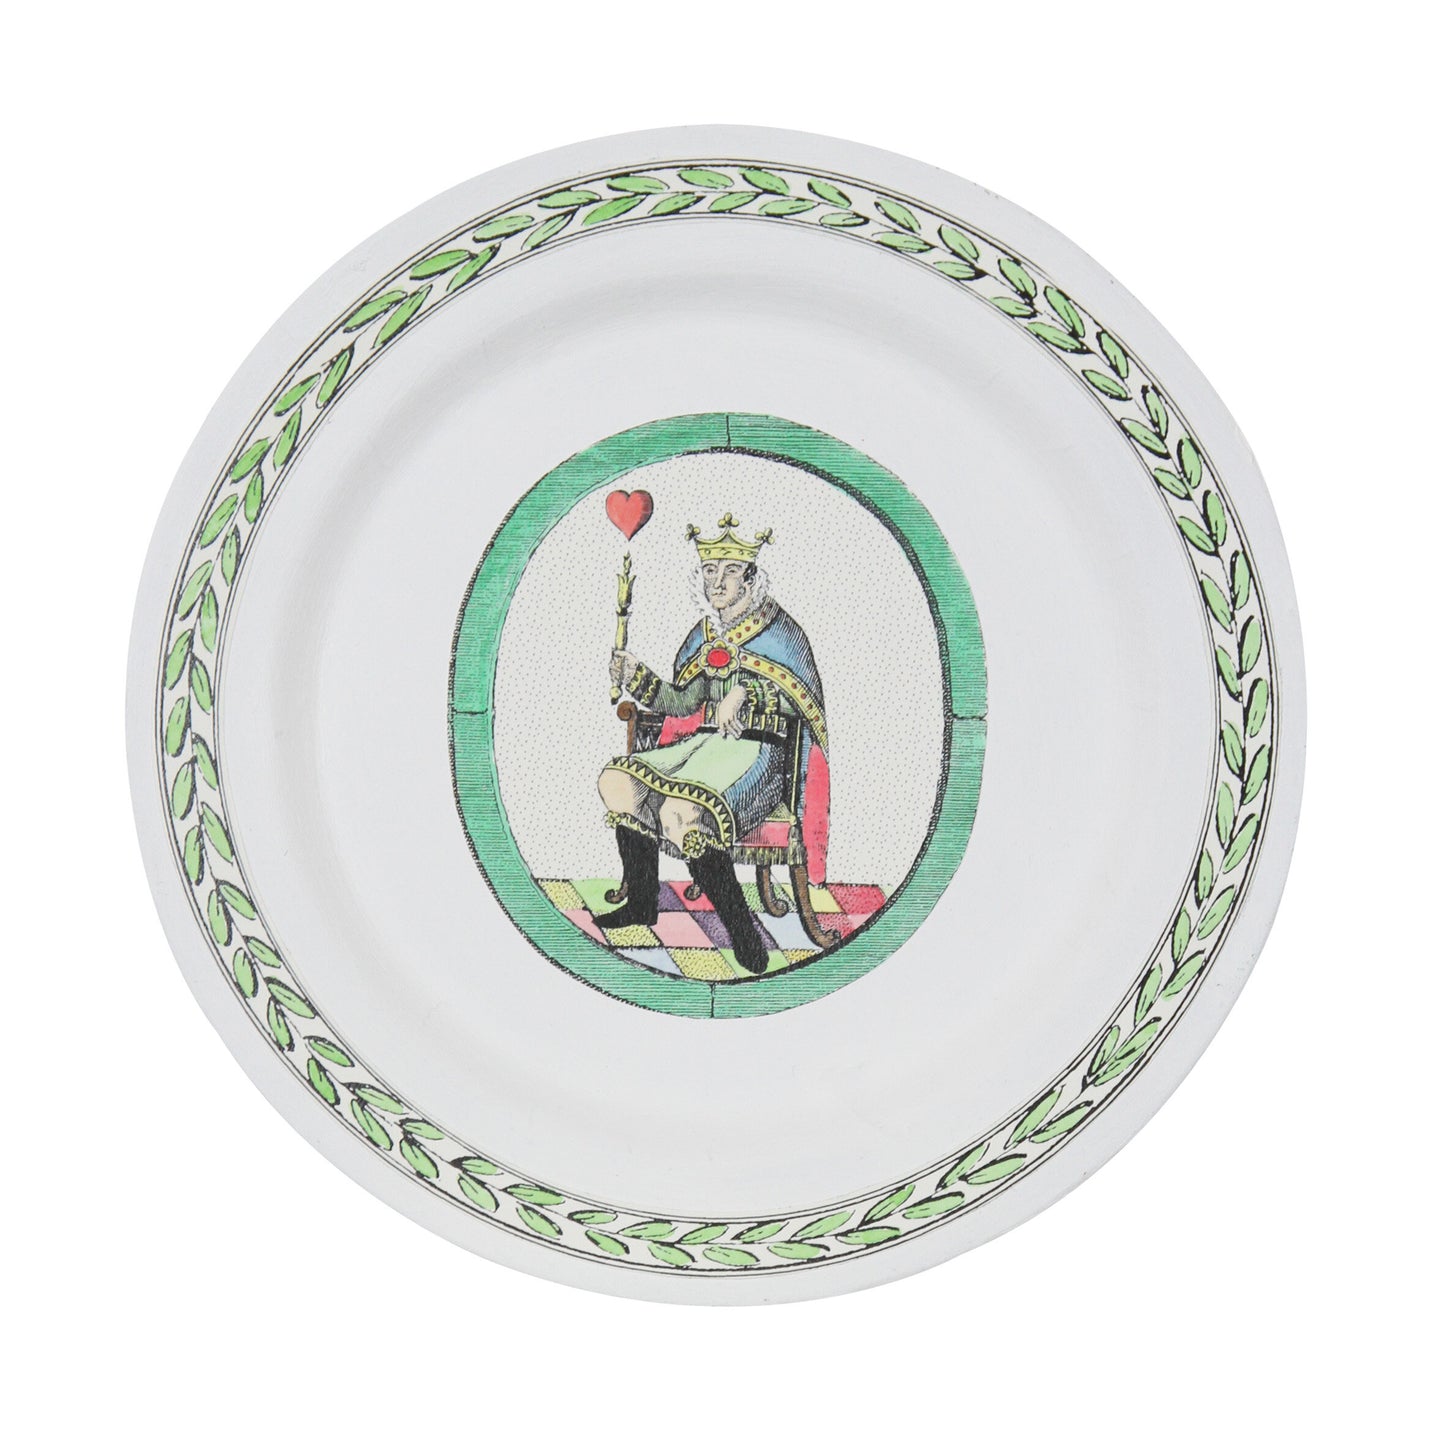 飾り皿 |キング・オブ・ハート